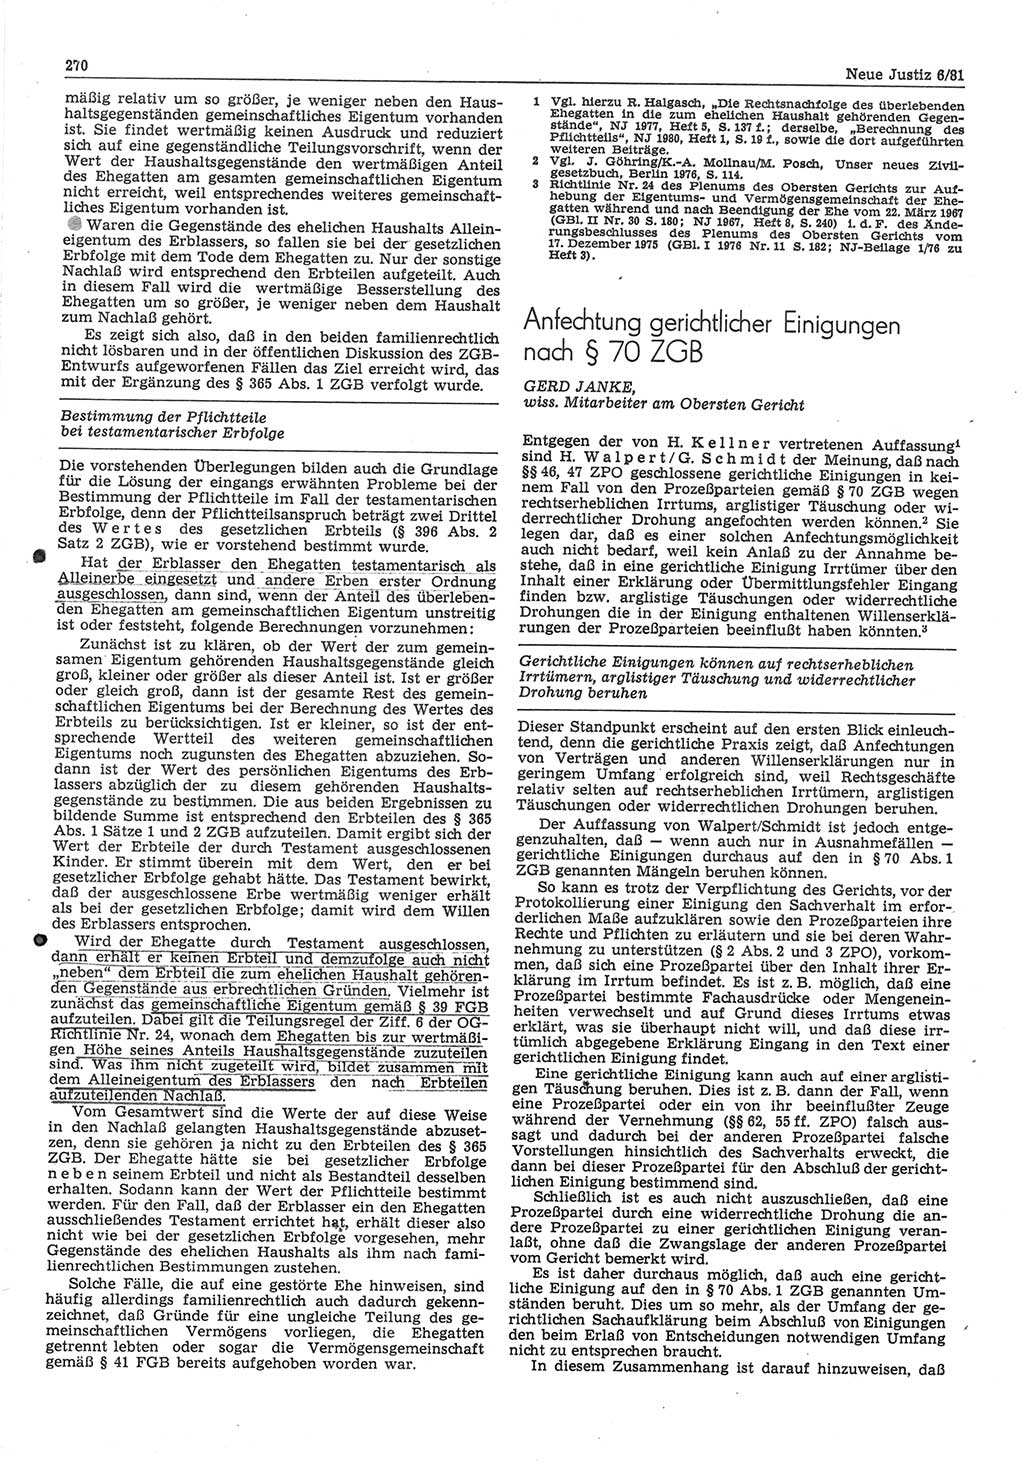 Neue Justiz (NJ), Zeitschrift für sozialistisches Recht und Gesetzlichkeit [Deutsche Demokratische Republik (DDR)], 35. Jahrgang 1981, Seite 270 (NJ DDR 1981, S. 270)